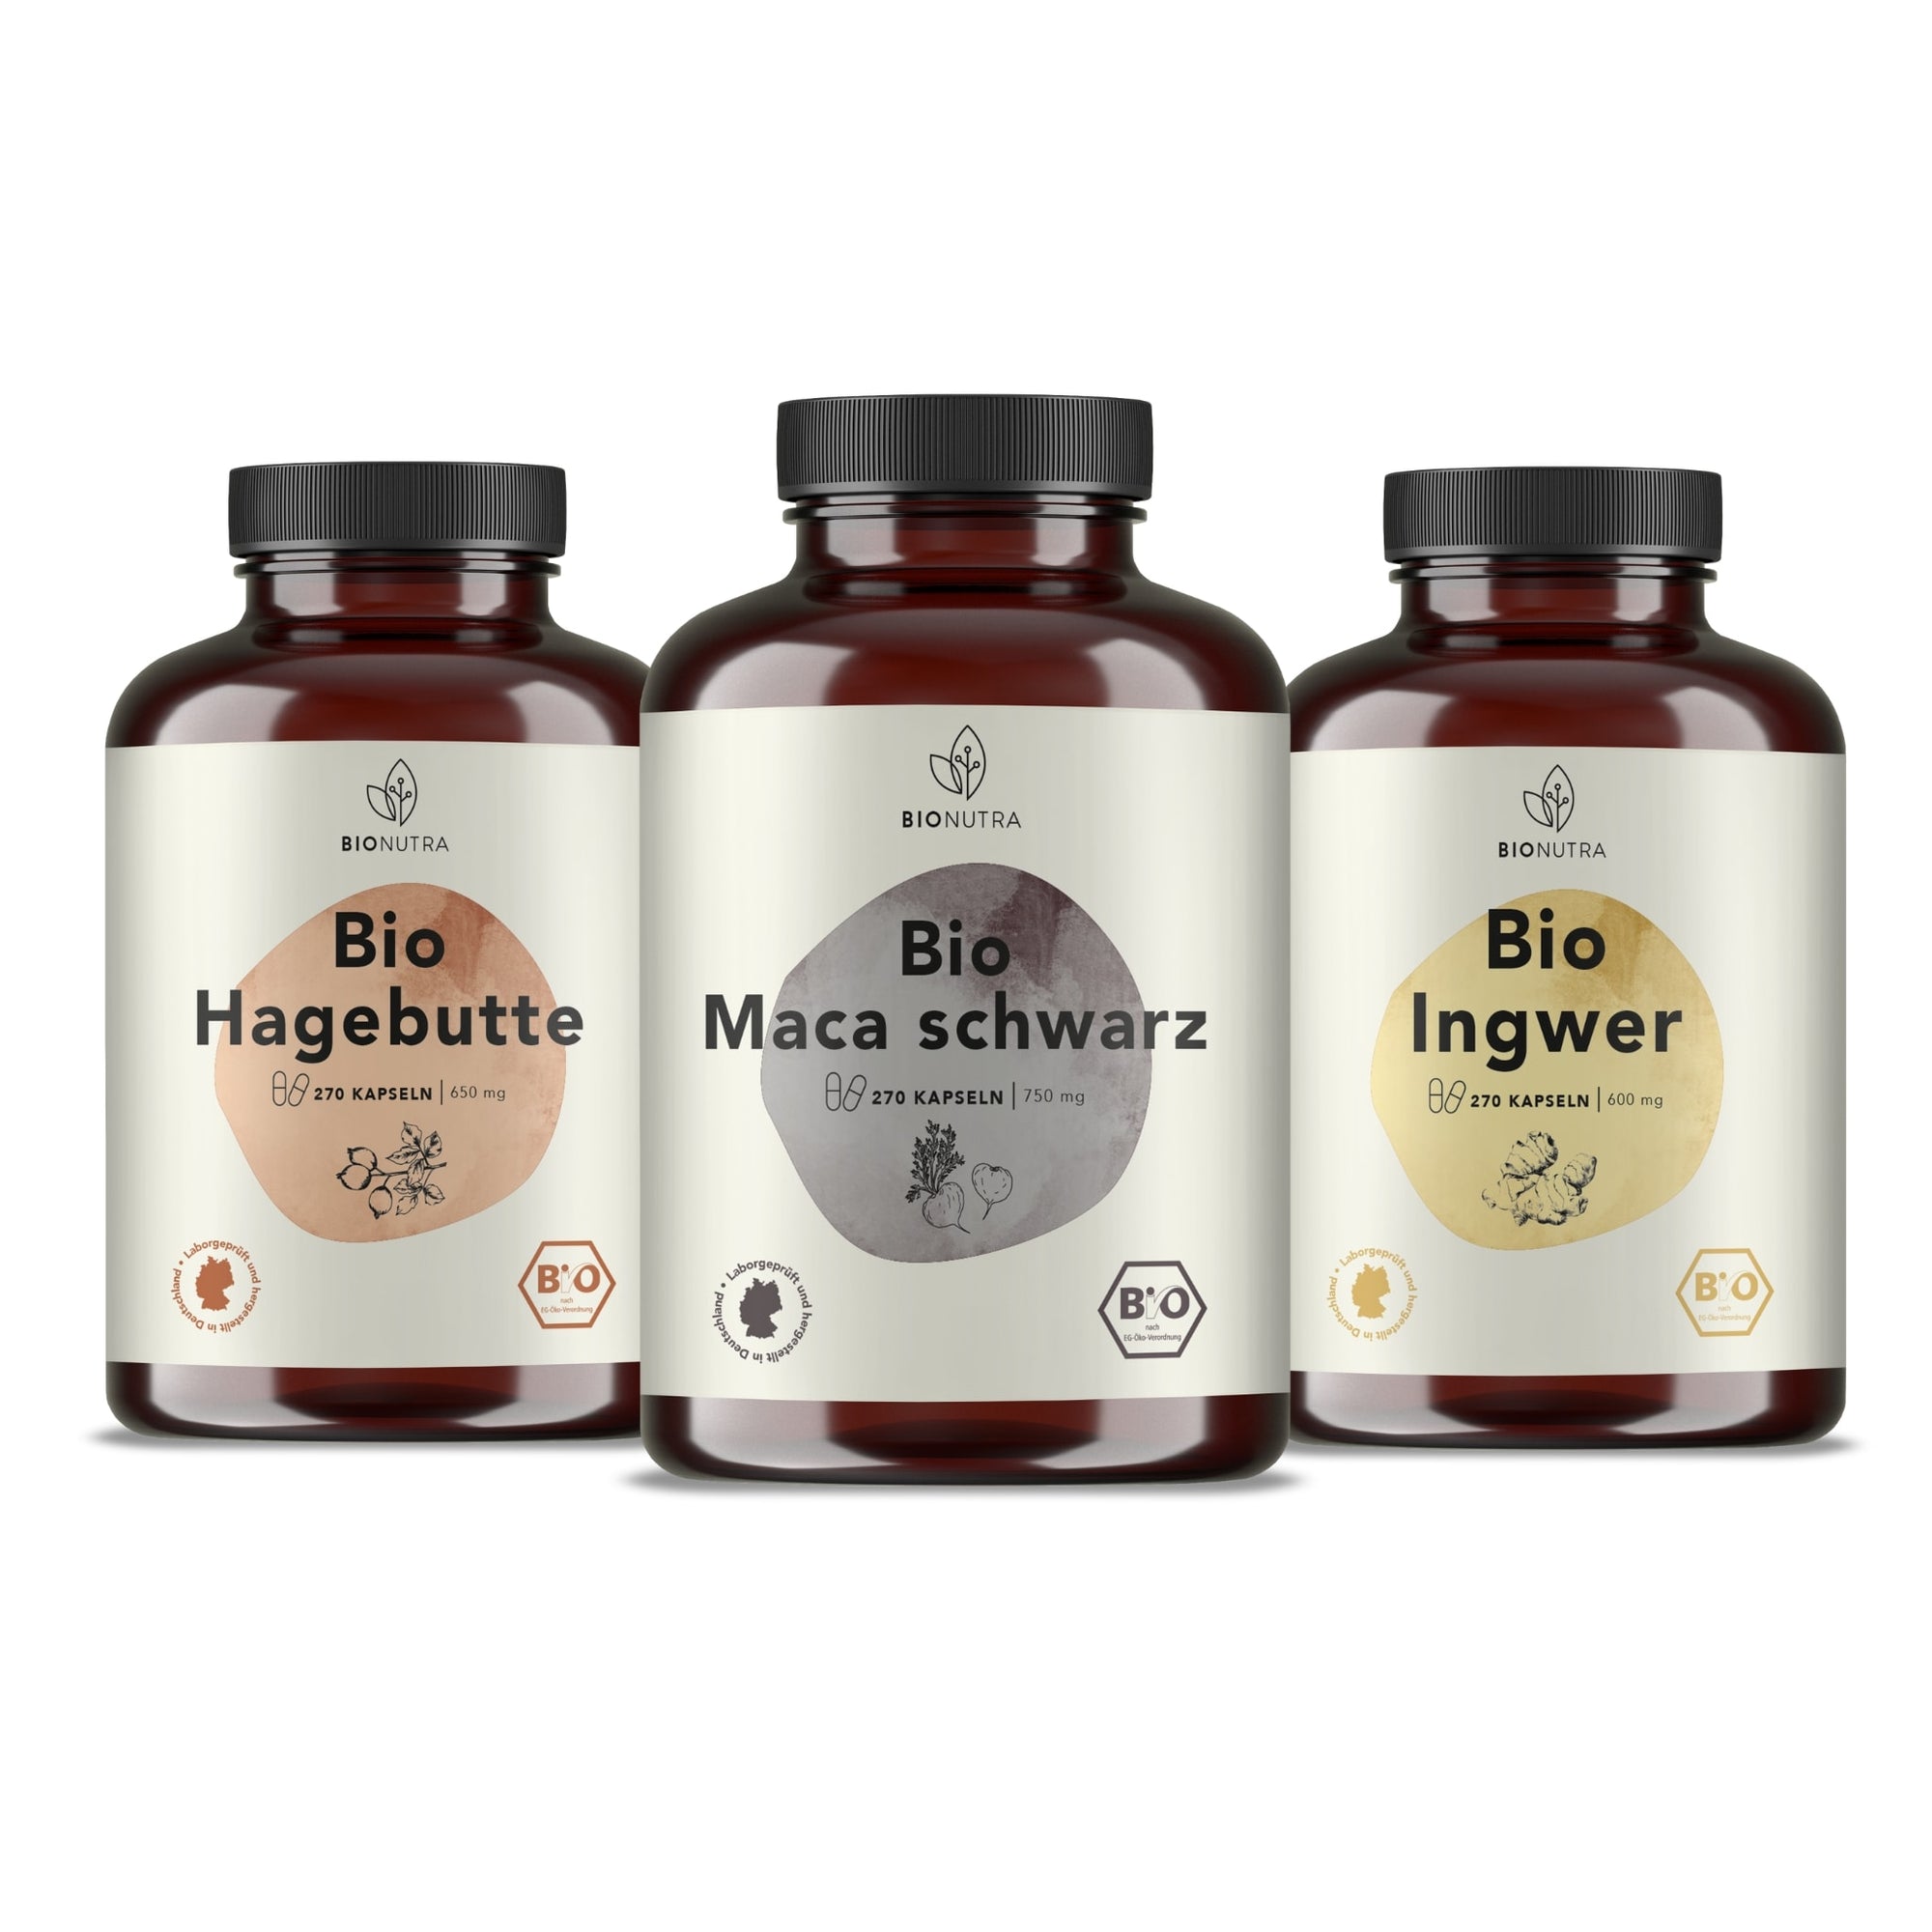 Bionutra Manneskraft Paket enthält Bio Maca schwarz Kapseln, Bio Ingwer Kapseln, Bio Hagebutte Kapseln